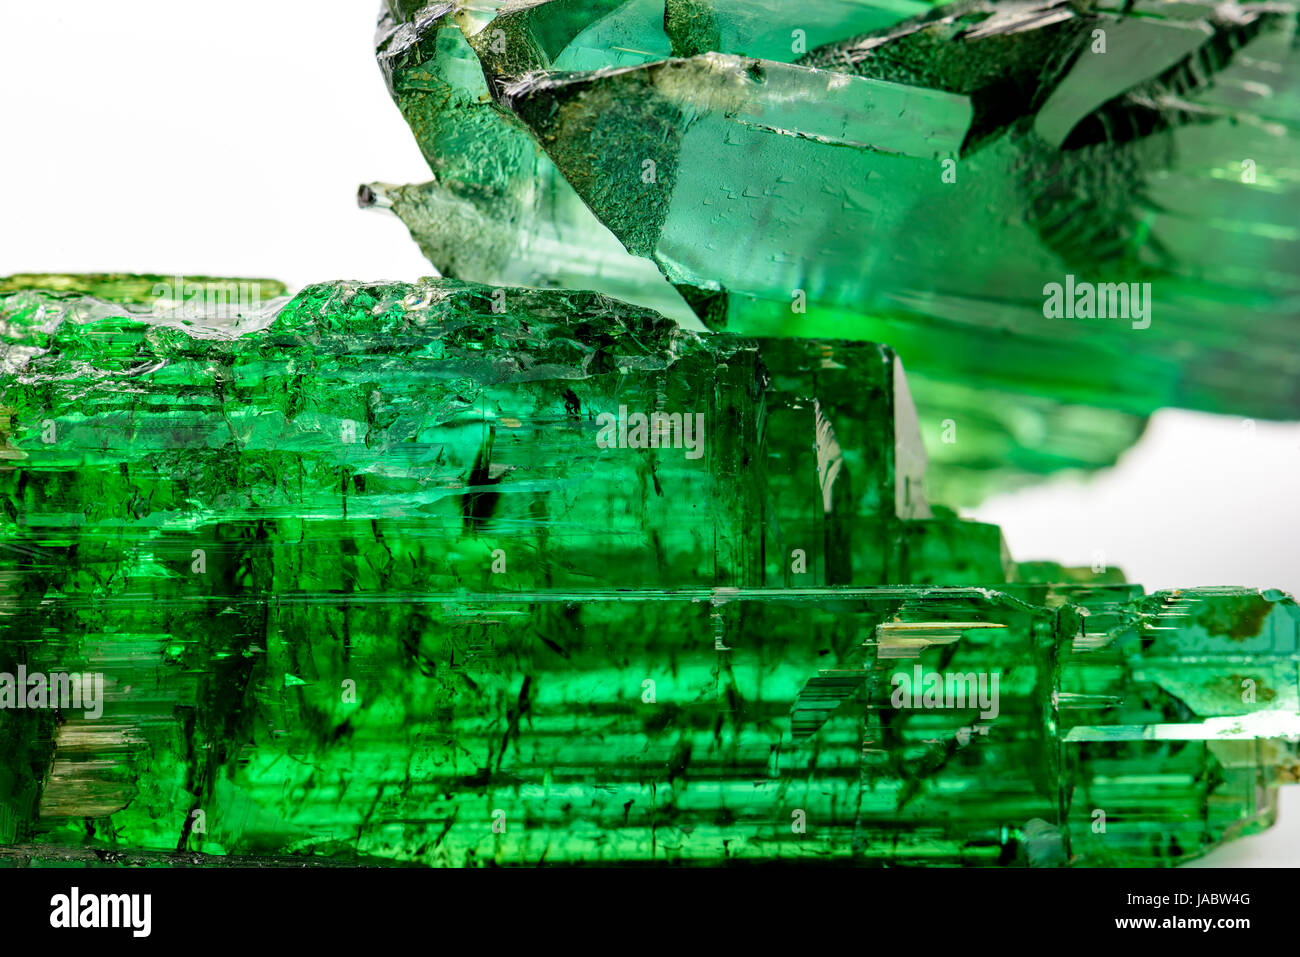 Détail de cristal tourmaline verte brésilienne avec ses textures, couleurs et transparence Banque D'Images